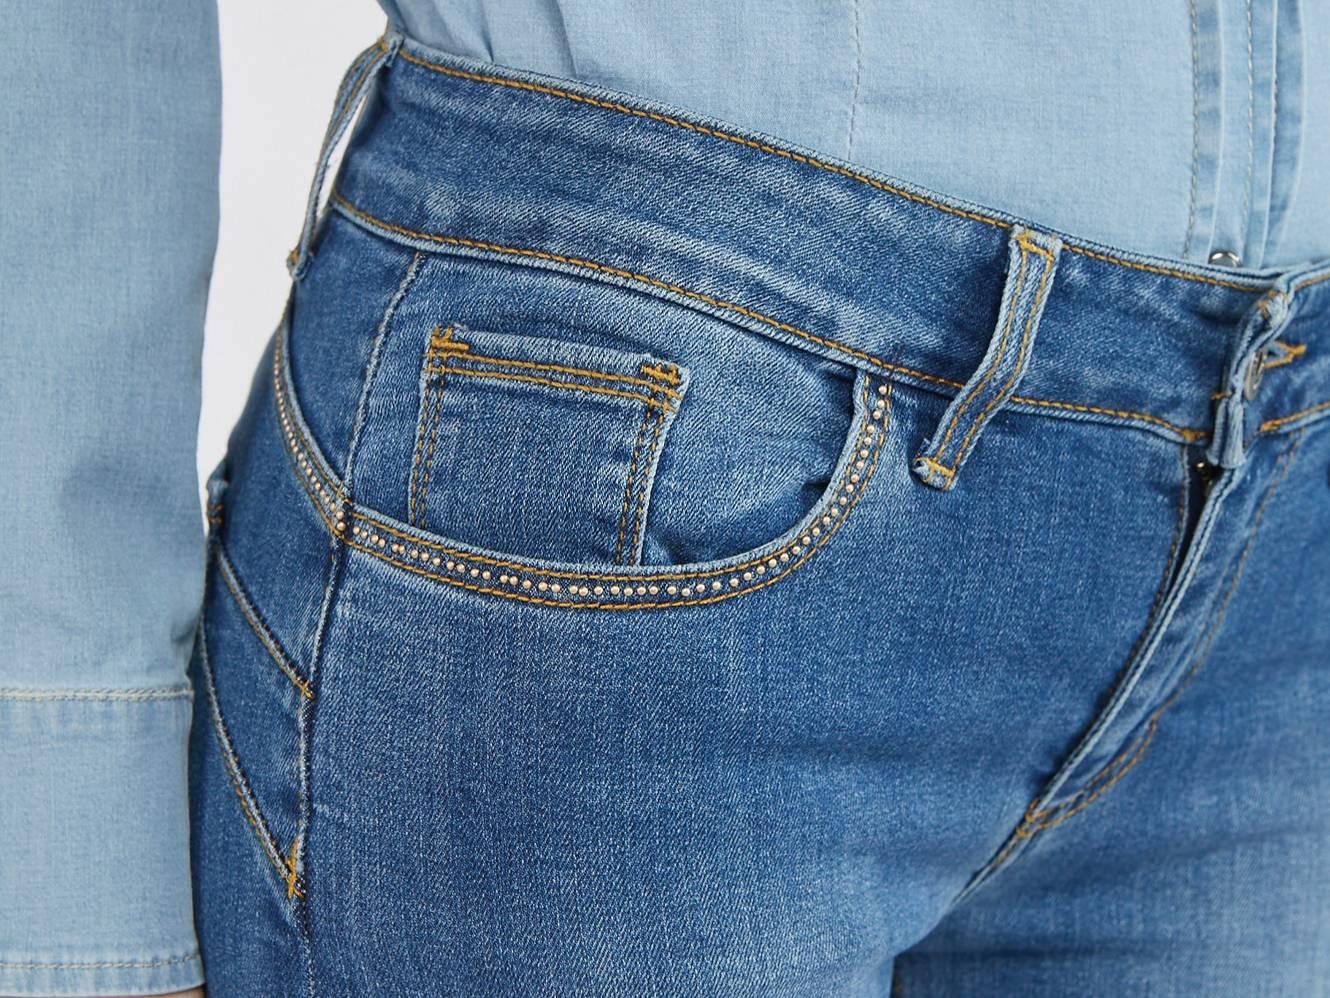 CAFENOIR Jeans Slim Fit Blu Medio Chiaro JJ0057 - Sandrini Calzature e Abbigliamento